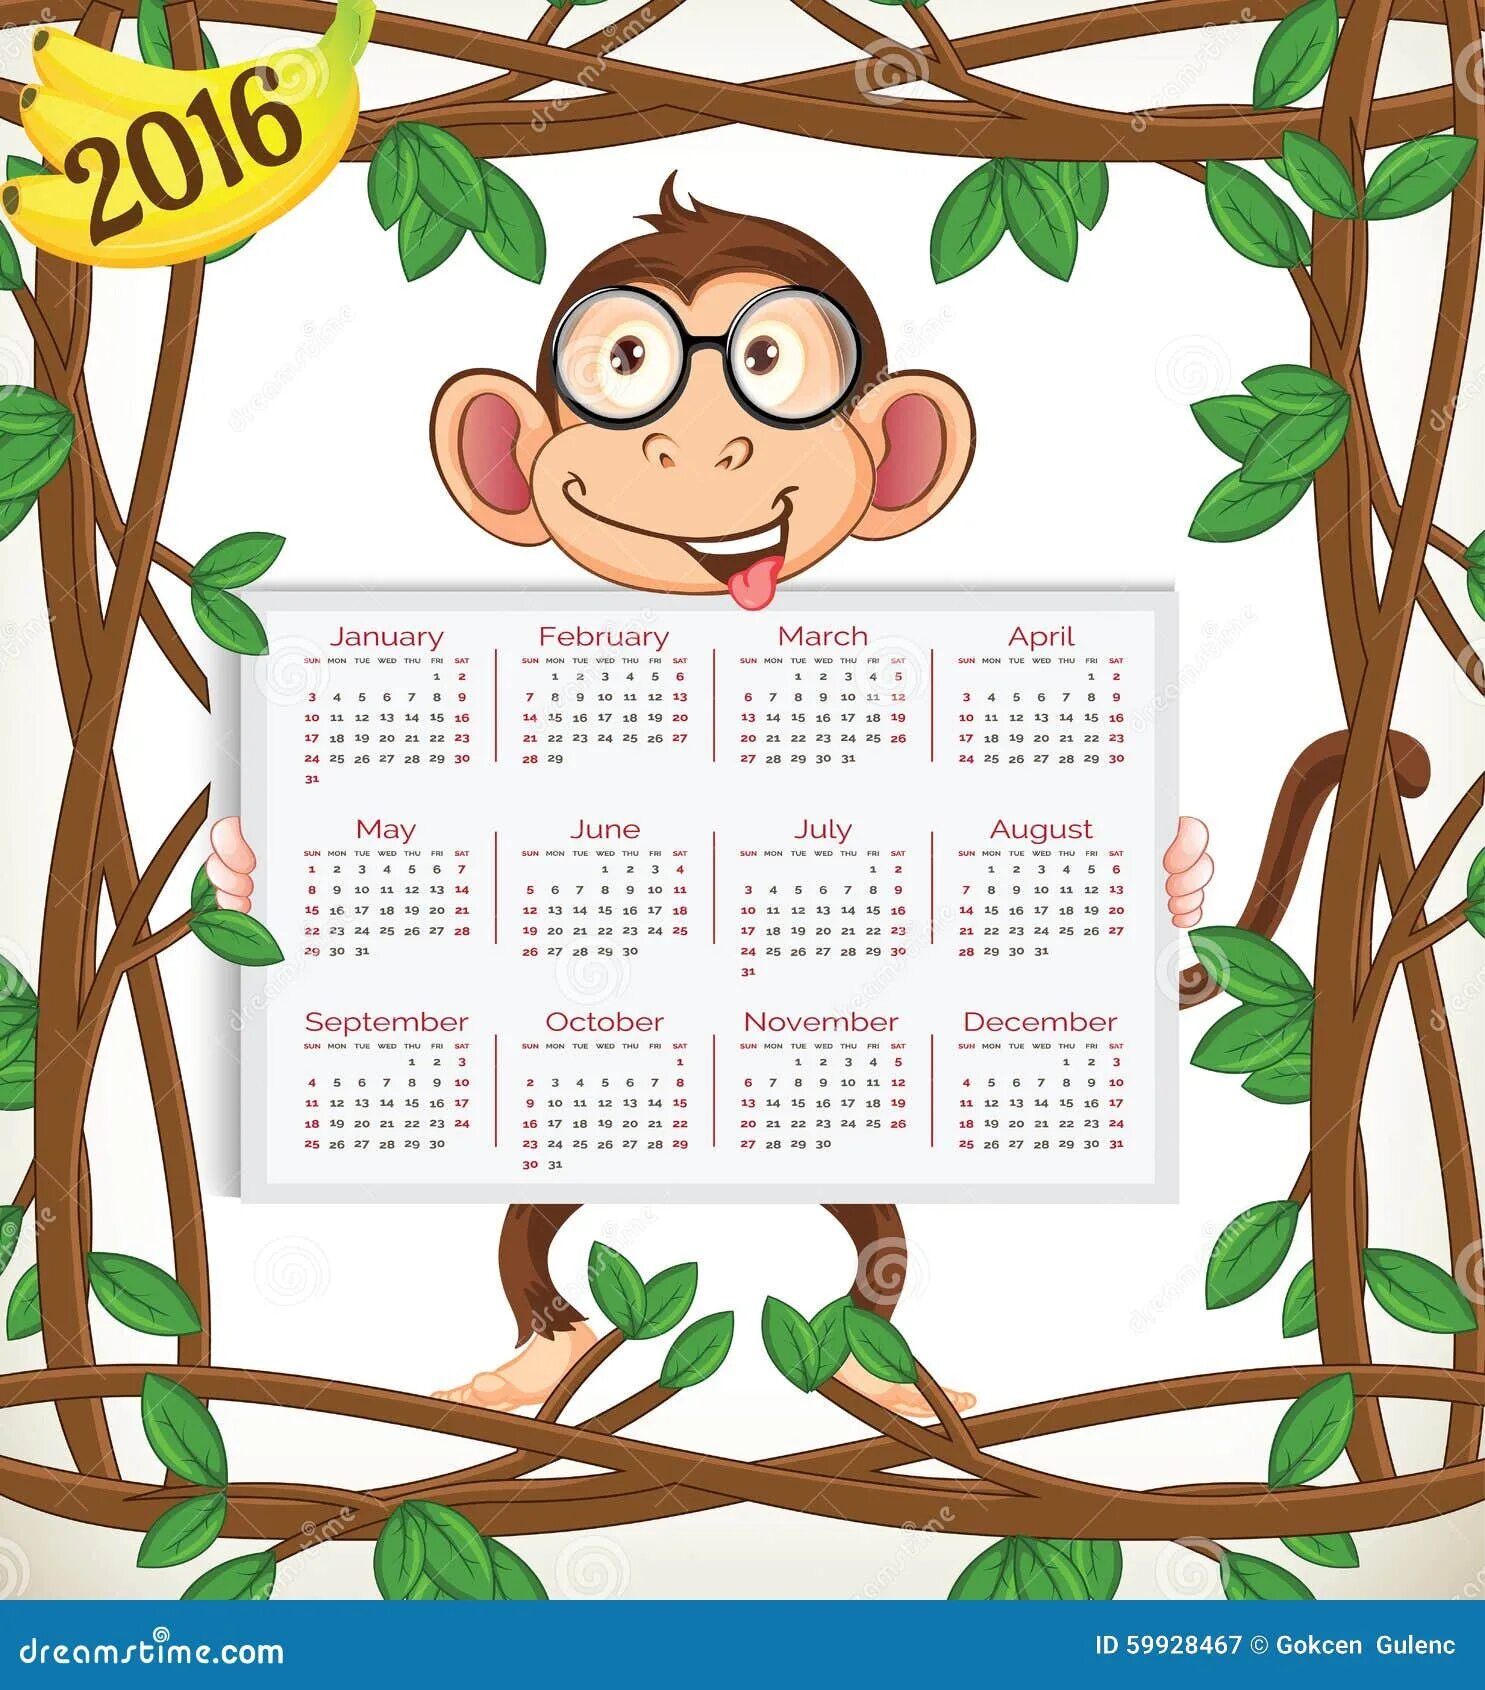 Год обезьяны календари. Календарь с обезьяной. Календарь 2016 год обезьяны. Календарь с обезьянами 2016. Календарь на новый год 2016 год обезьяны.